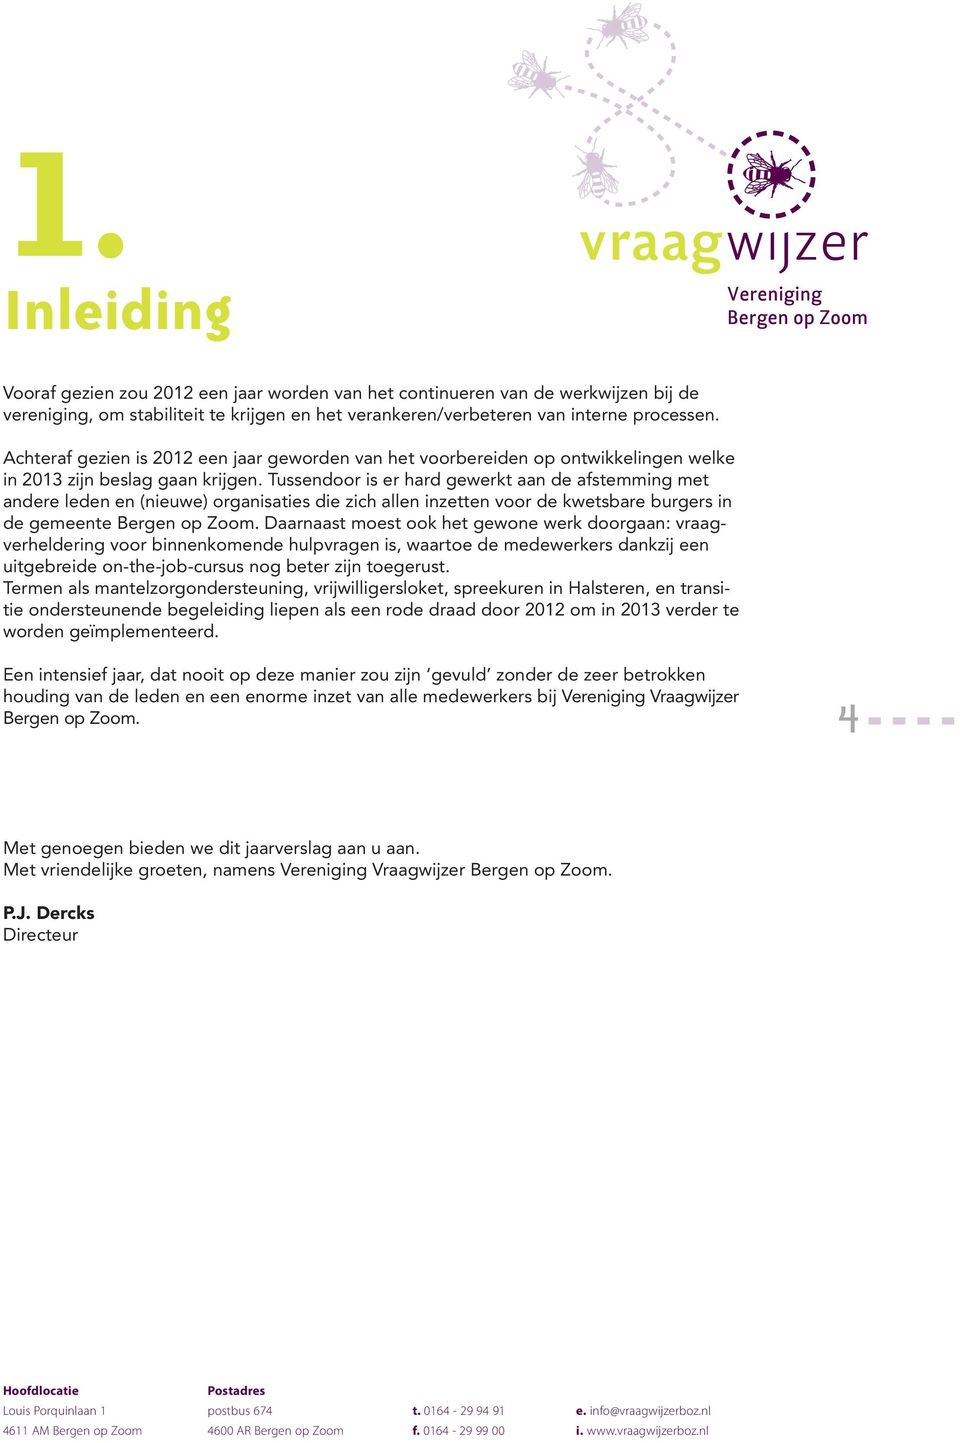 Tussendoor is er hard gewerkt aan de afstemming met andere leden en (nieuwe) organisaties die zich allen inzetten voor de kwetsbare burgers in de gemeente Bergen op Zoom.